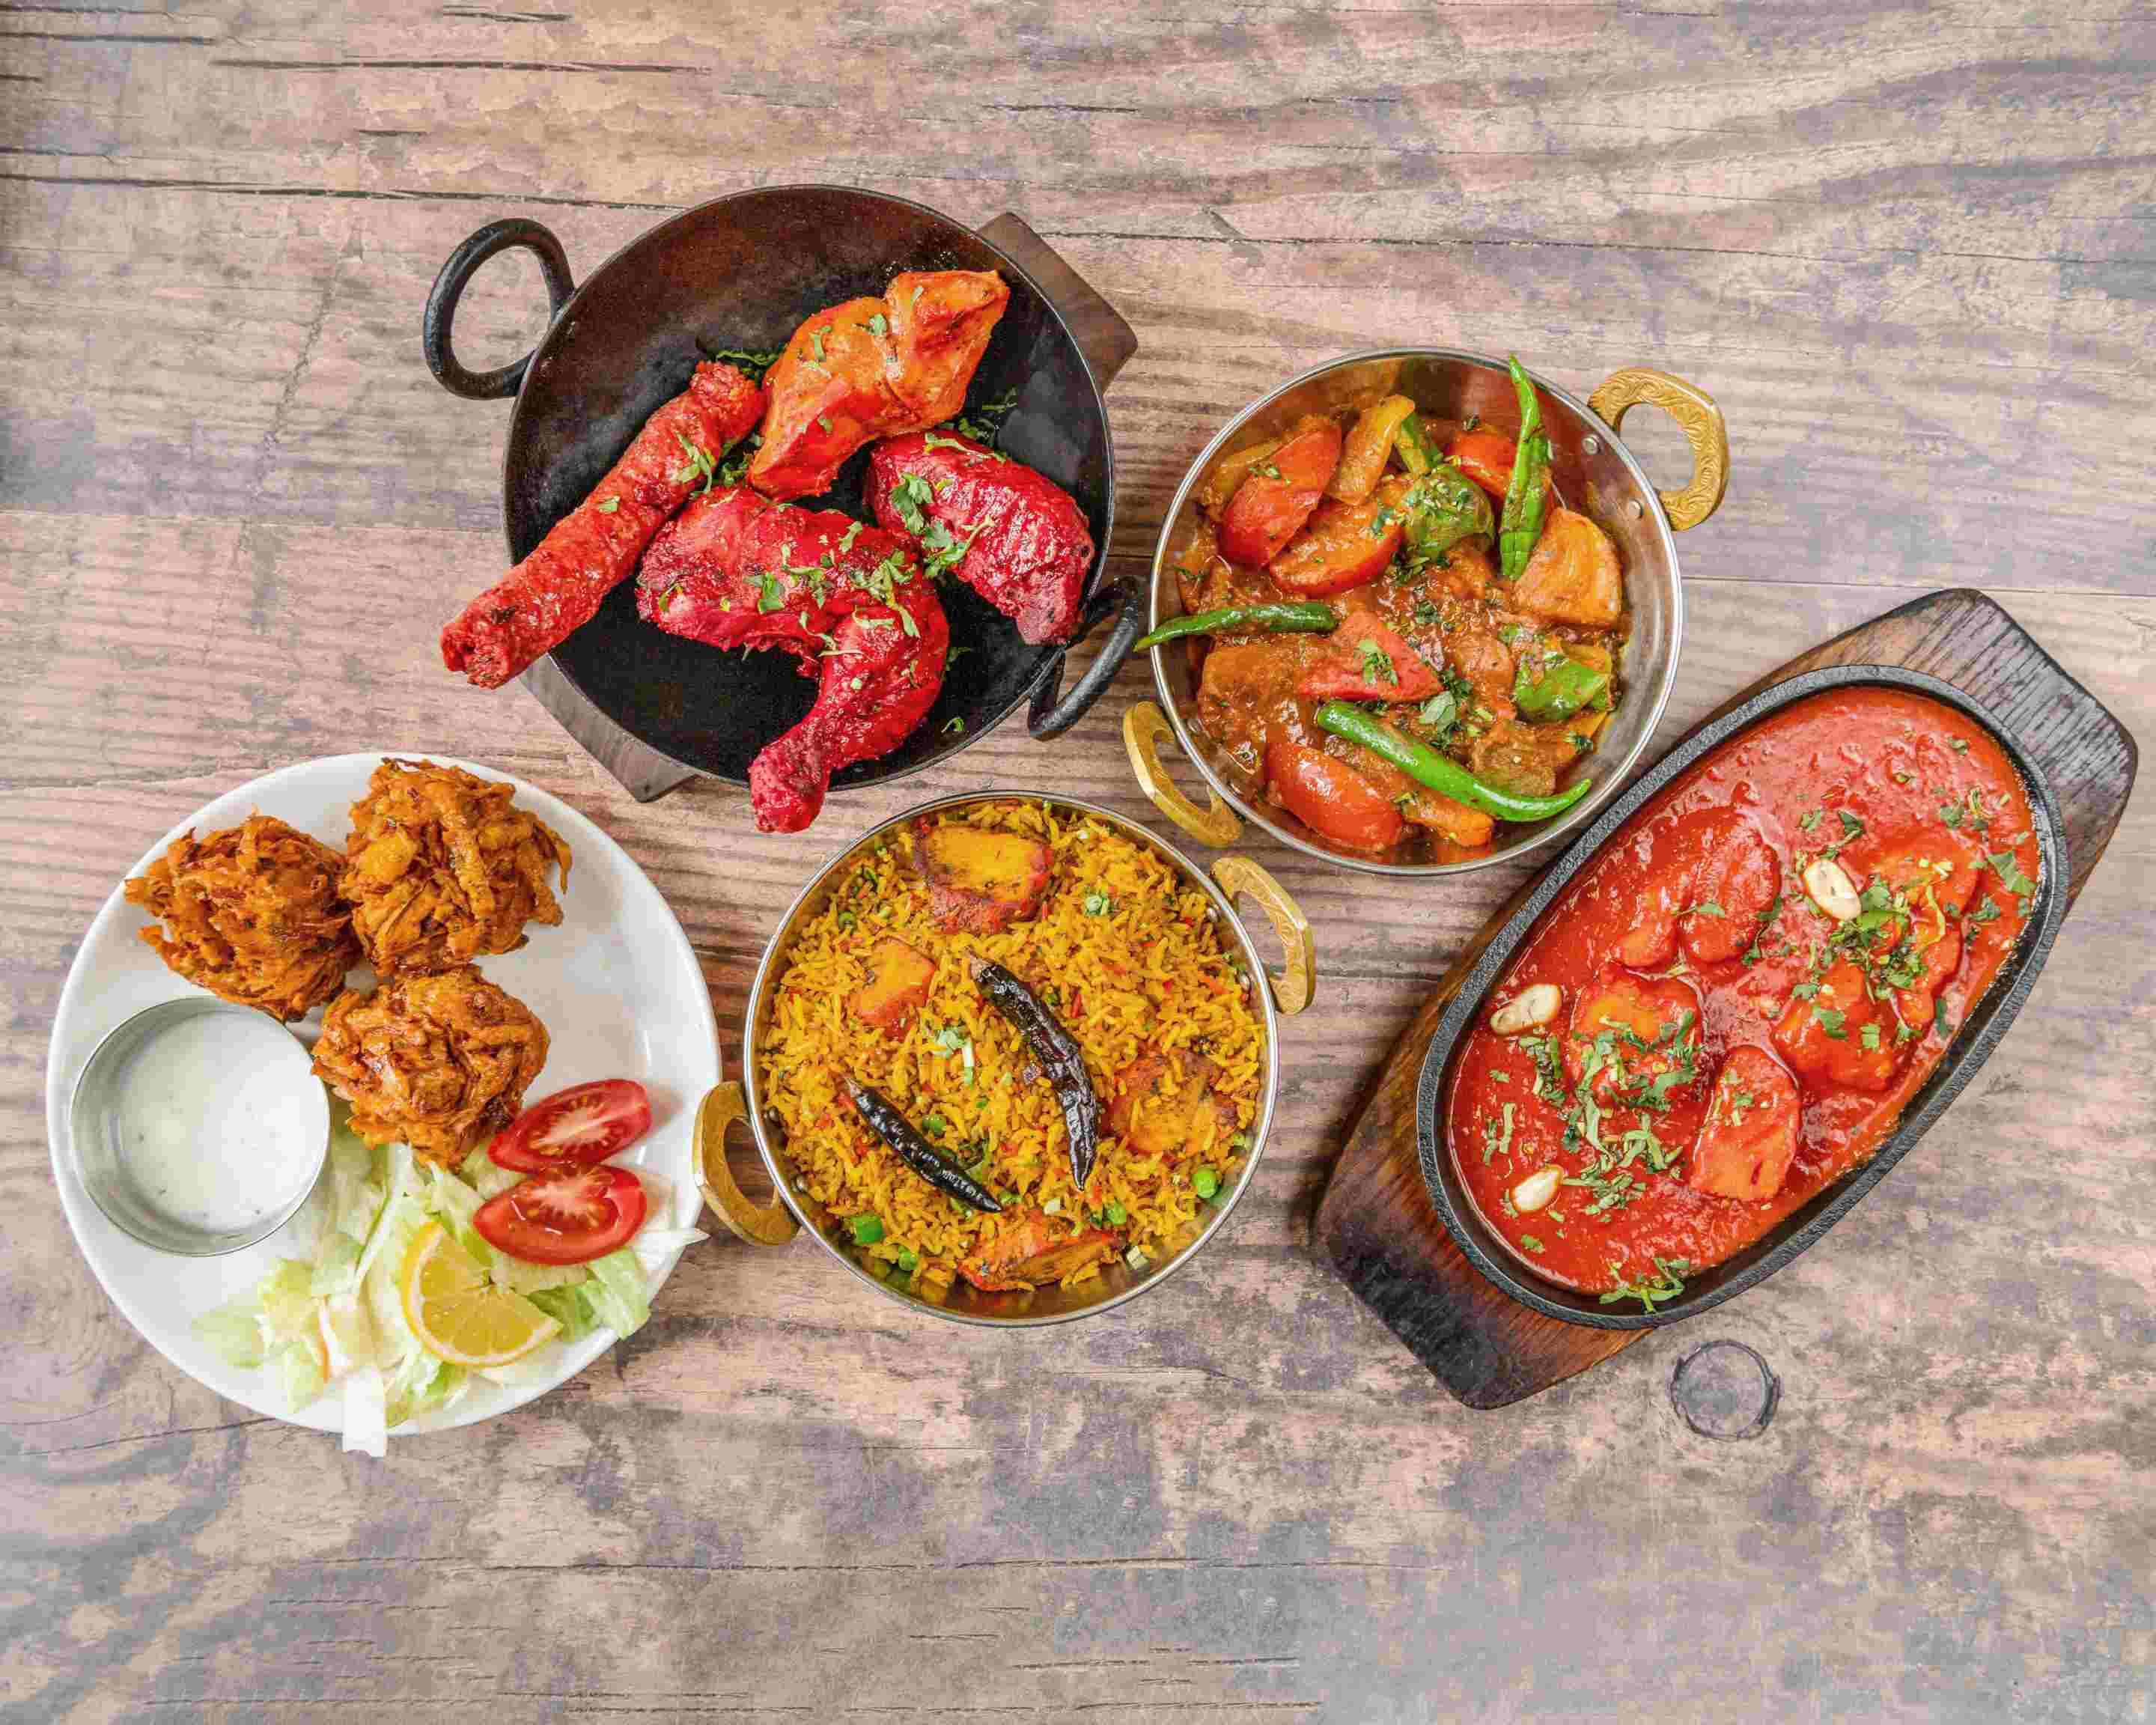 Balti dish, Sizzlers and curry - Picture of Tandoori Masala, Copenhagen -  Tripadvisor